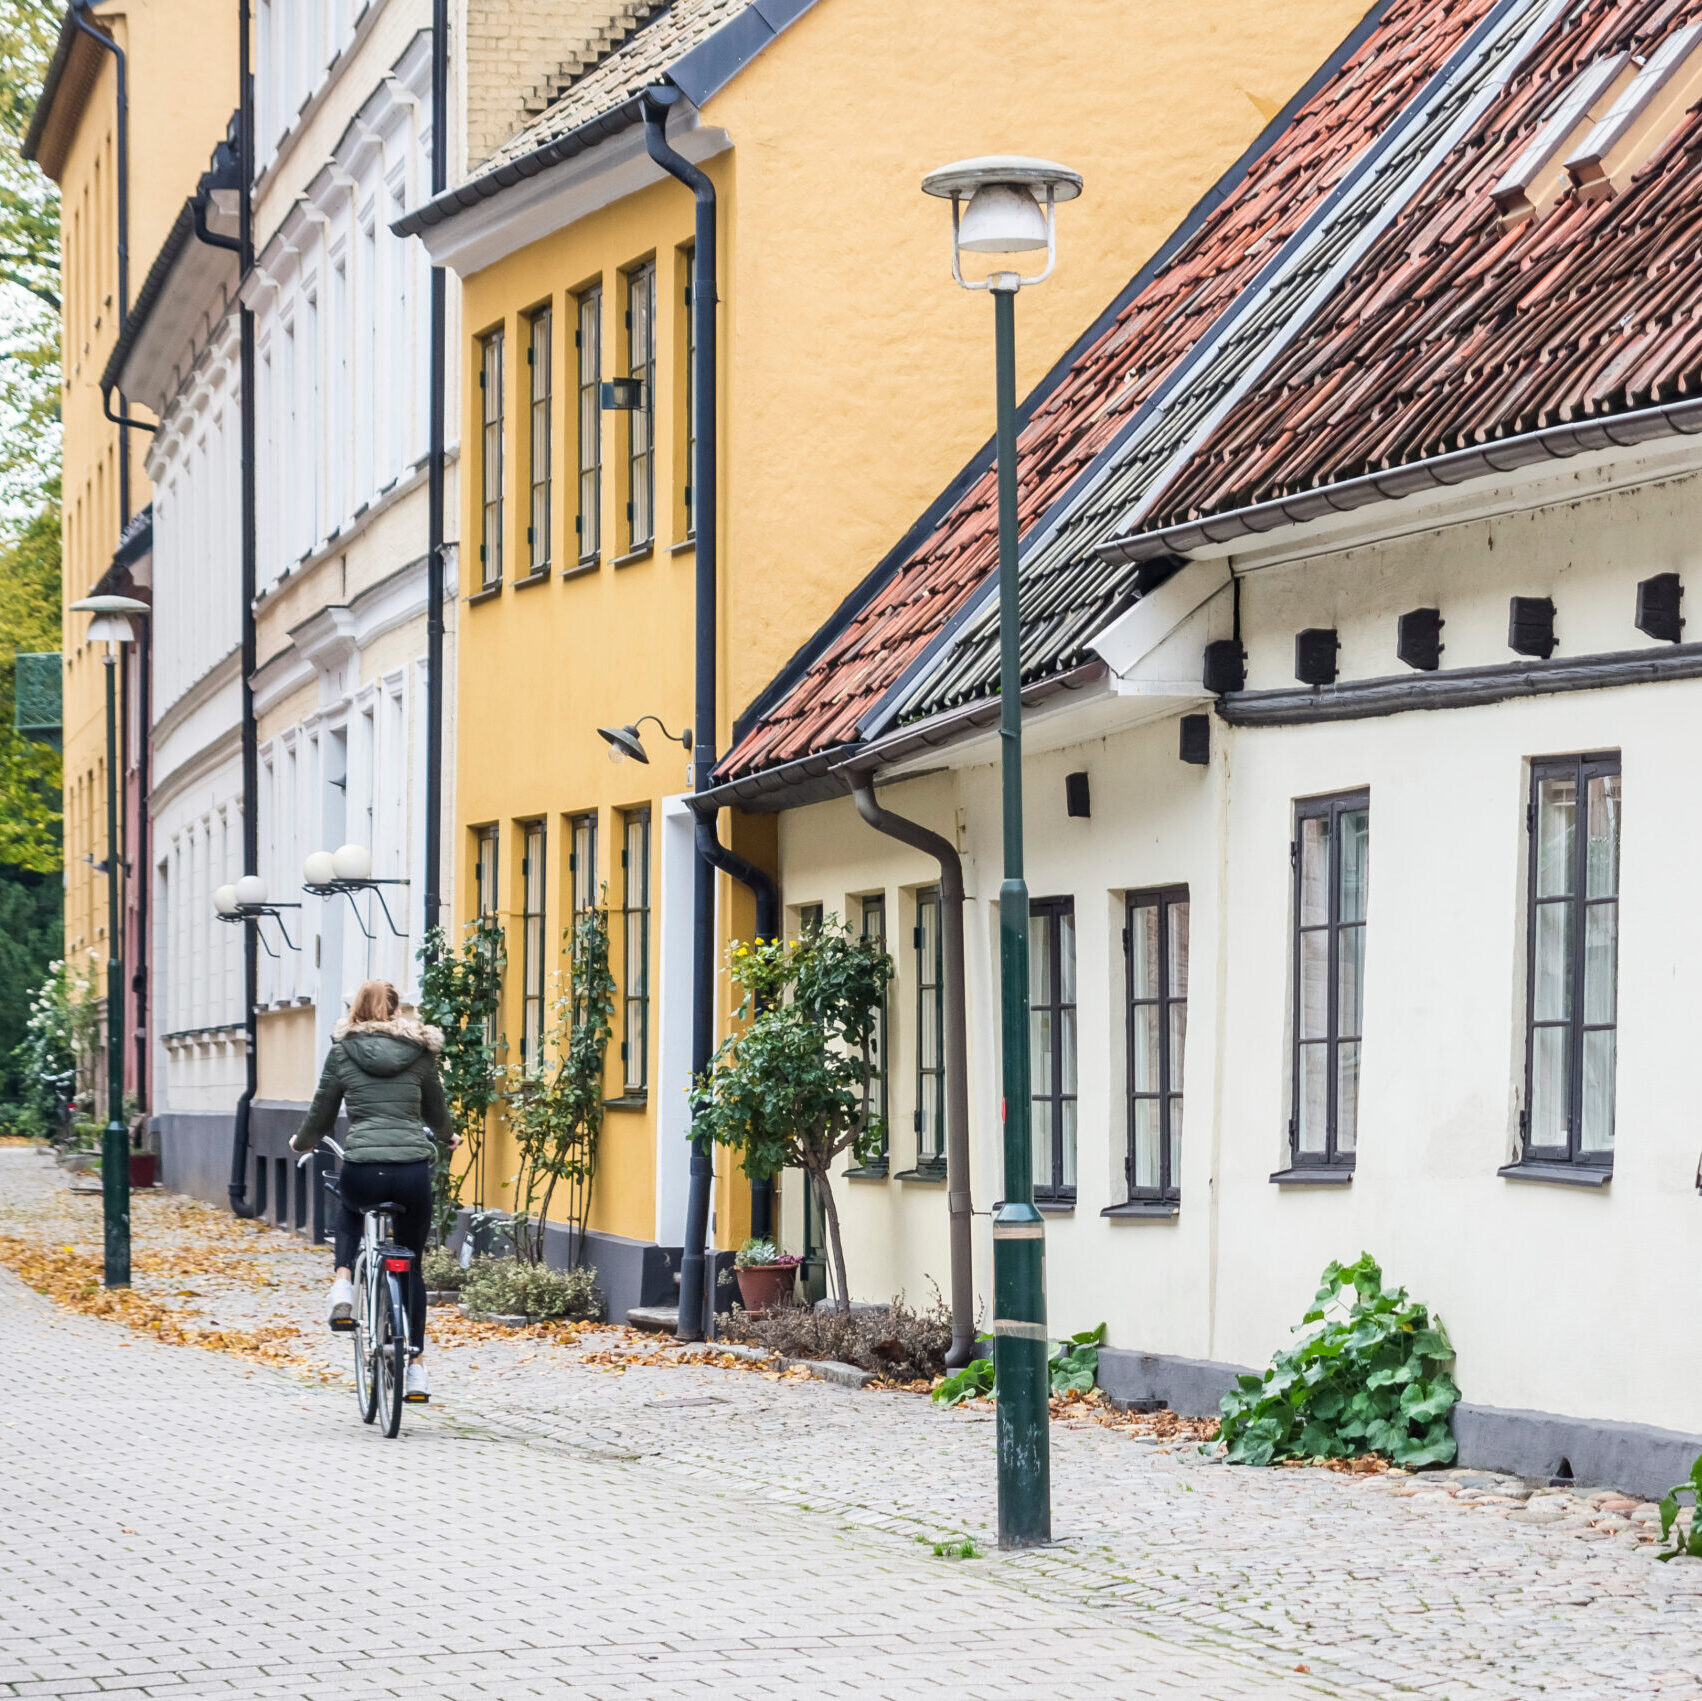 Eine lebendige stadt voller möglichkeiten - willkommen in Malmö